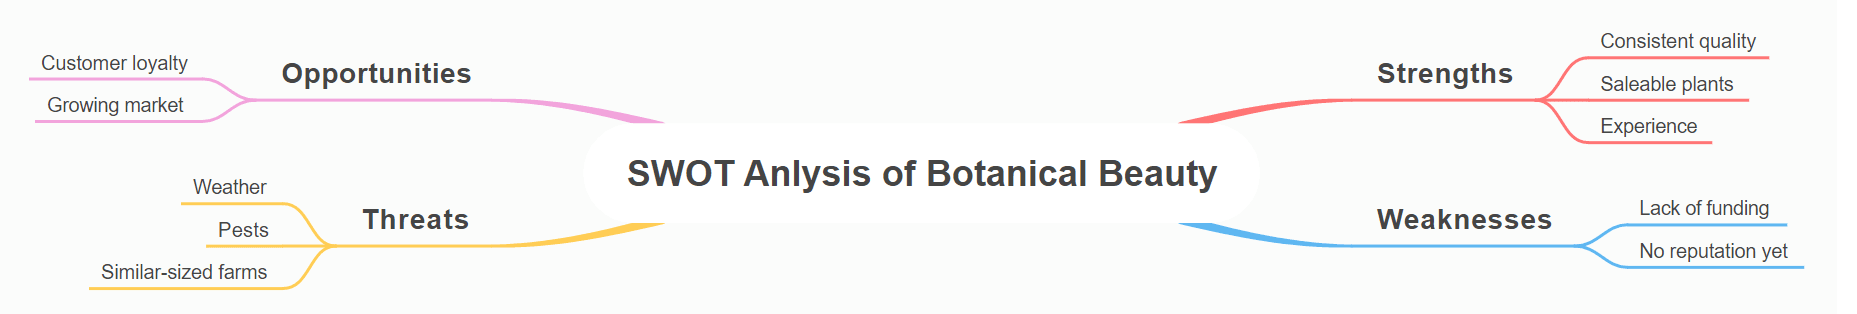 SWOT Analysis of Botanical Beauty